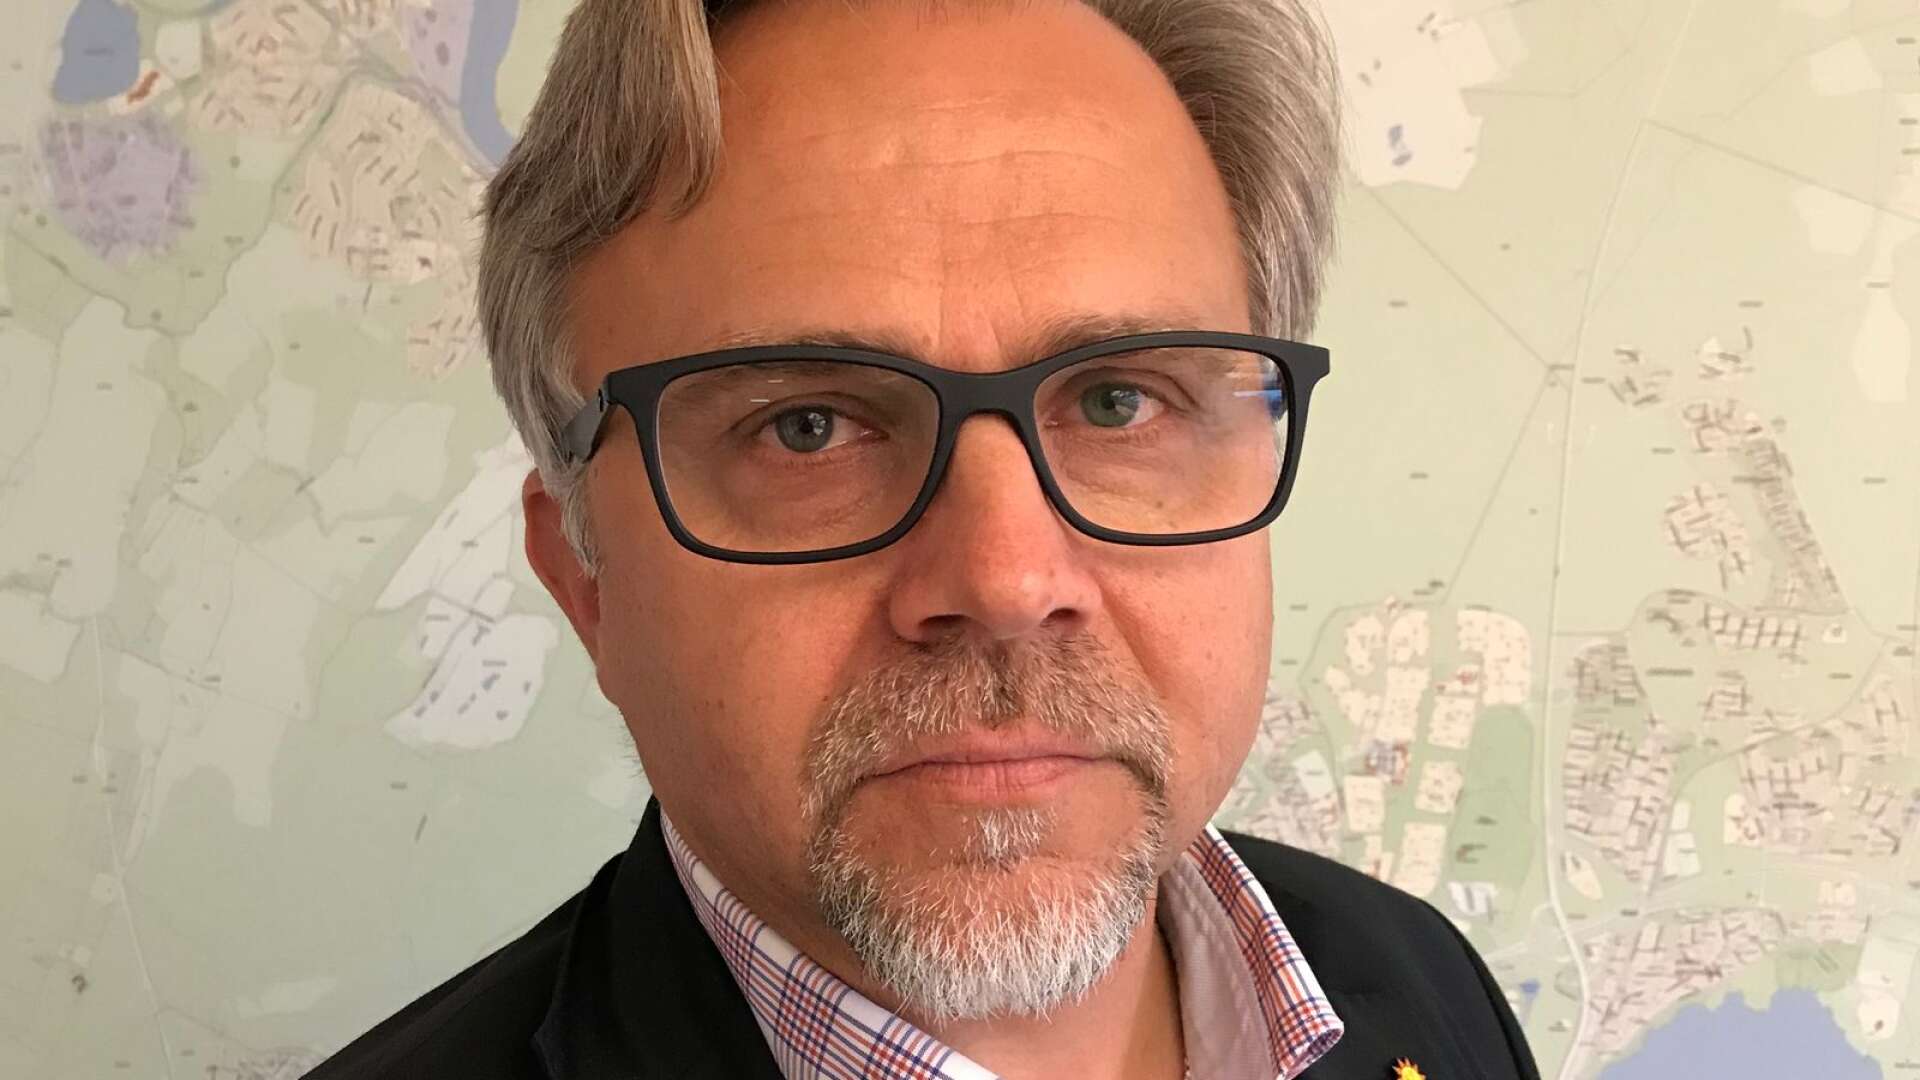 Det är fruktansvärt och ytterst allvarligt att nazister, fascister och folkmordsförnekare ökar i antal, har de glömt sin historia? Jag ser med stor oro på utvecklingen i delar av Sverige, skriver Niklas Wikström.